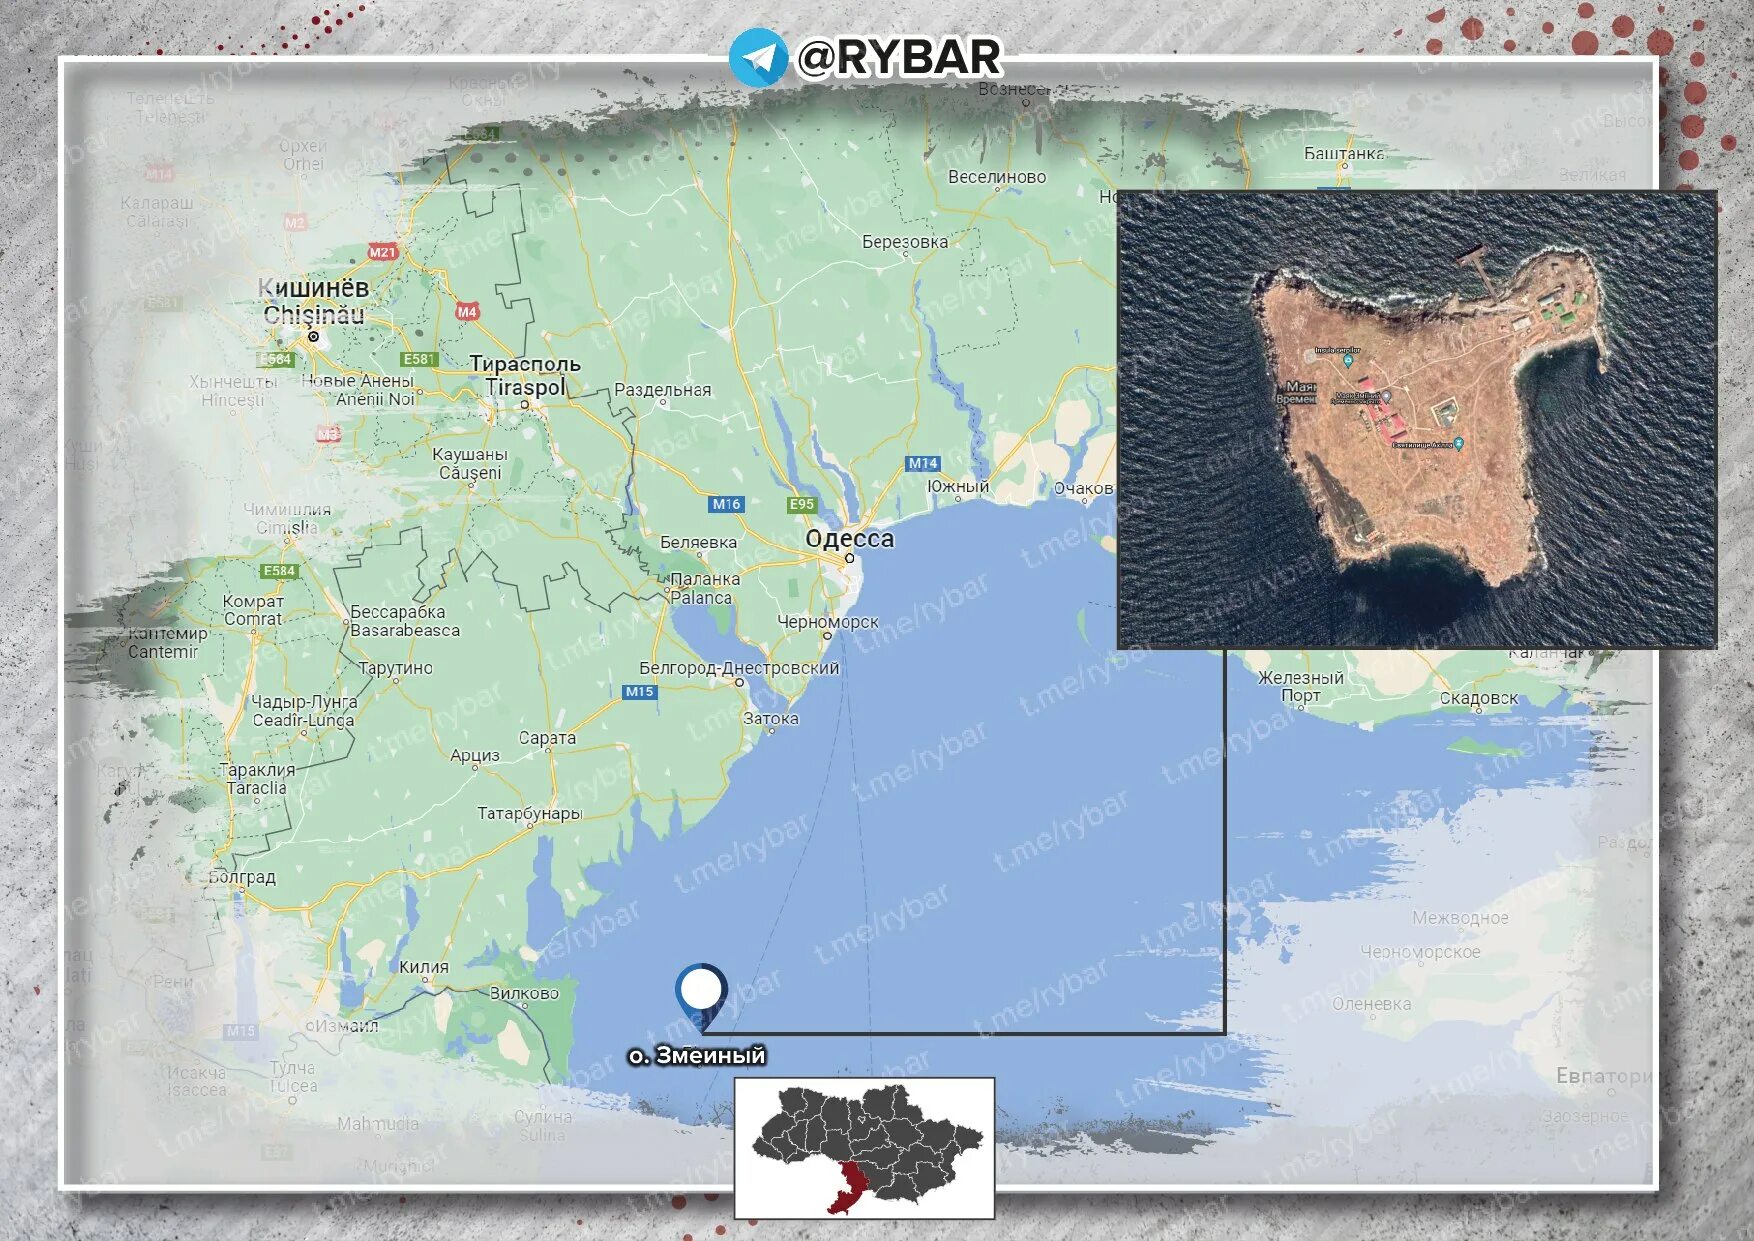 Острова змеиный где. Карта Украины остров змеиный остров. Остров змеиный Украина в черном море на карте. Остров змеиный в черном море на карте. Военные с острова змеиный в черном море.